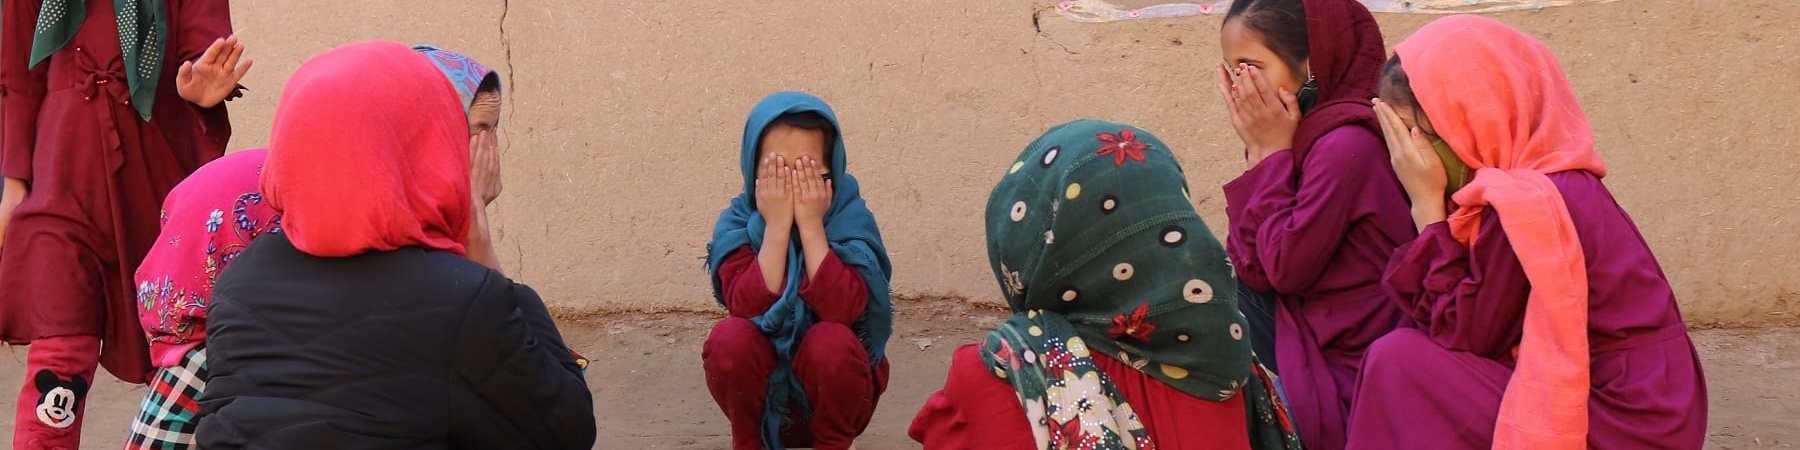 bambine vestite in viole e rosso sono sedute in cerchio e si coprono il volto con le mani.